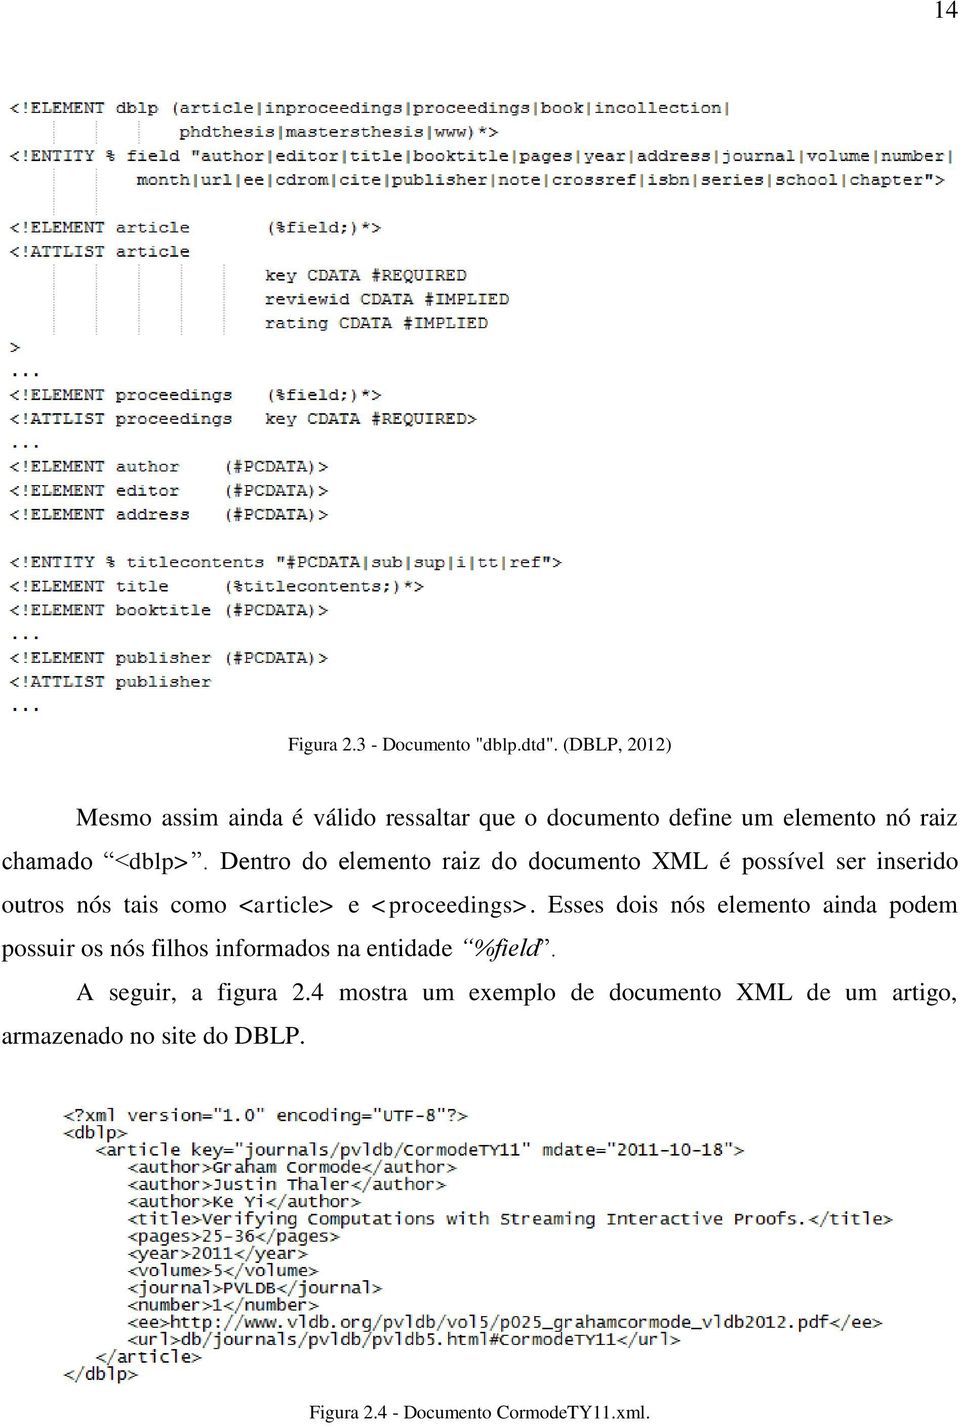 Dentro do elemento raiz do documento XML é possível ser inserido outros nós tais como <article> e <proceedings>.